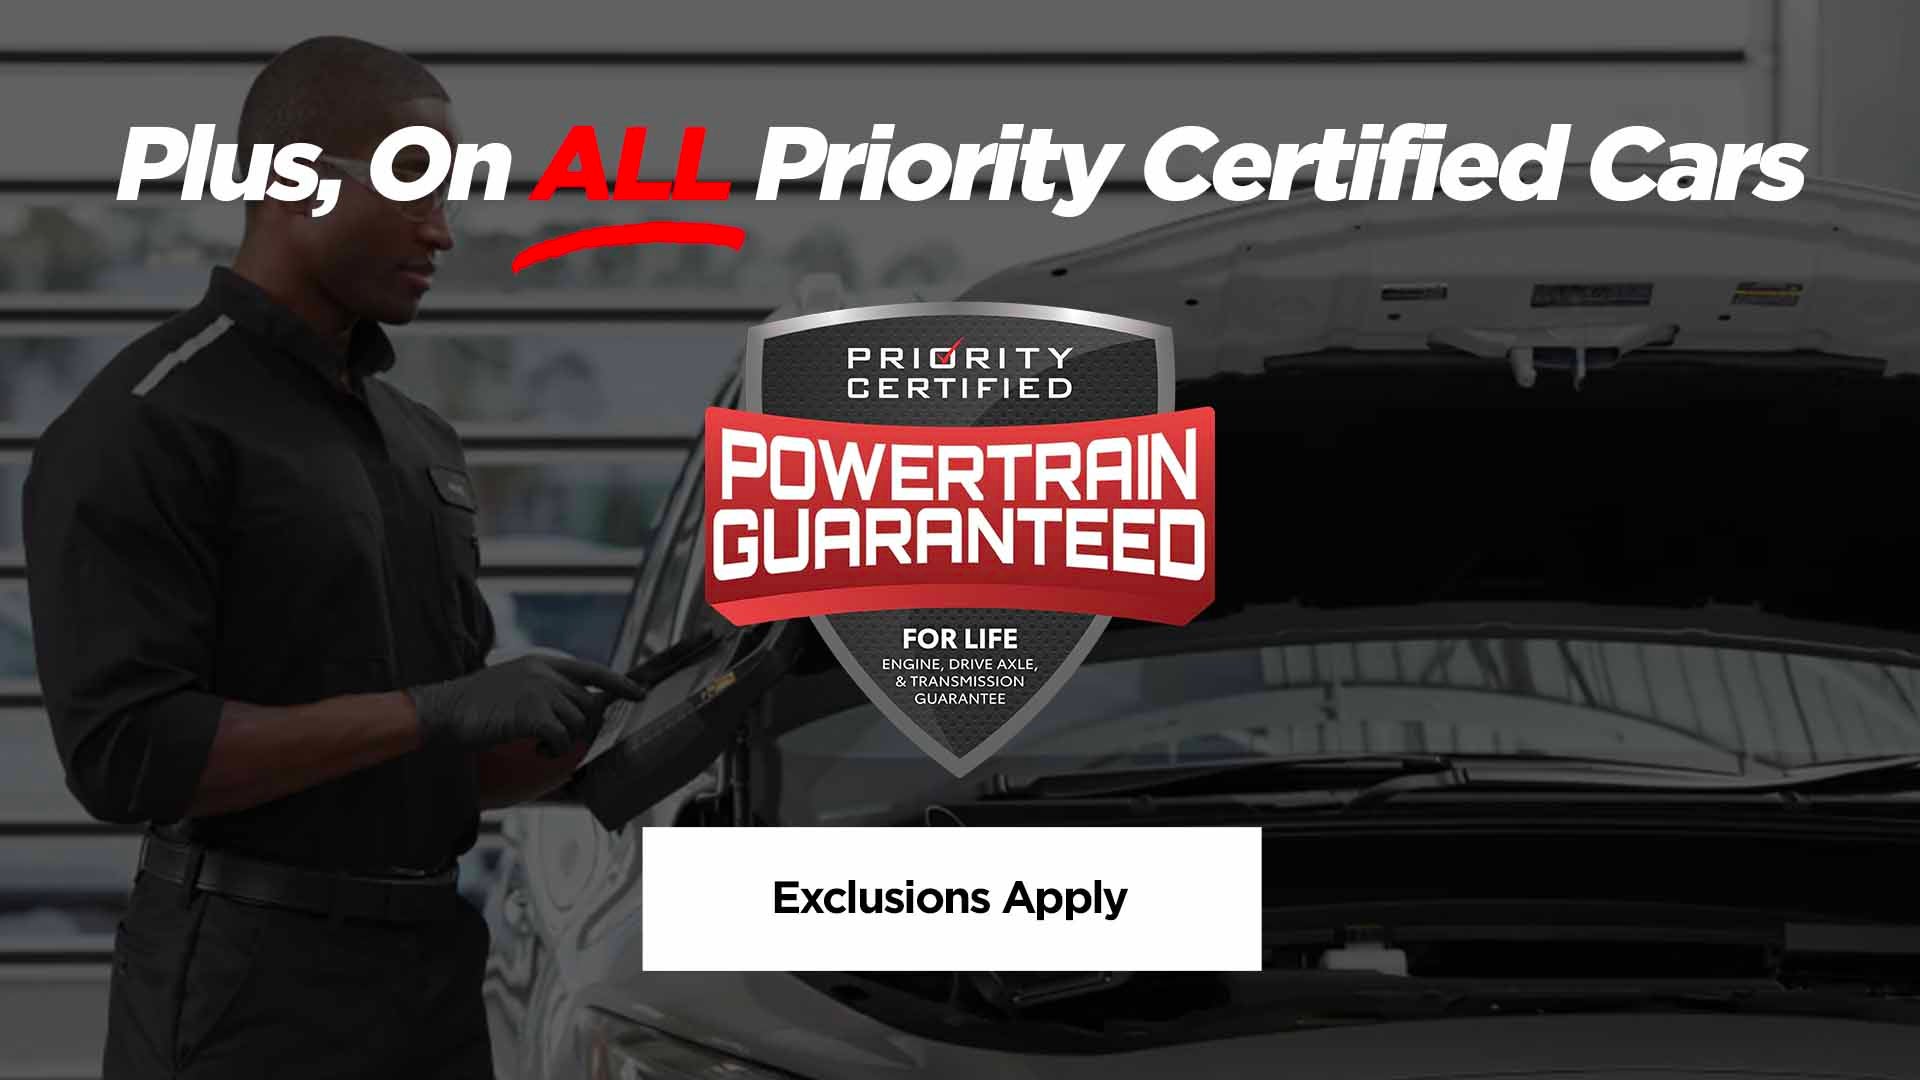 Priority Honda Hampton in Hampton VA, Powertrain Guaranteed on Priority Certified Cars*